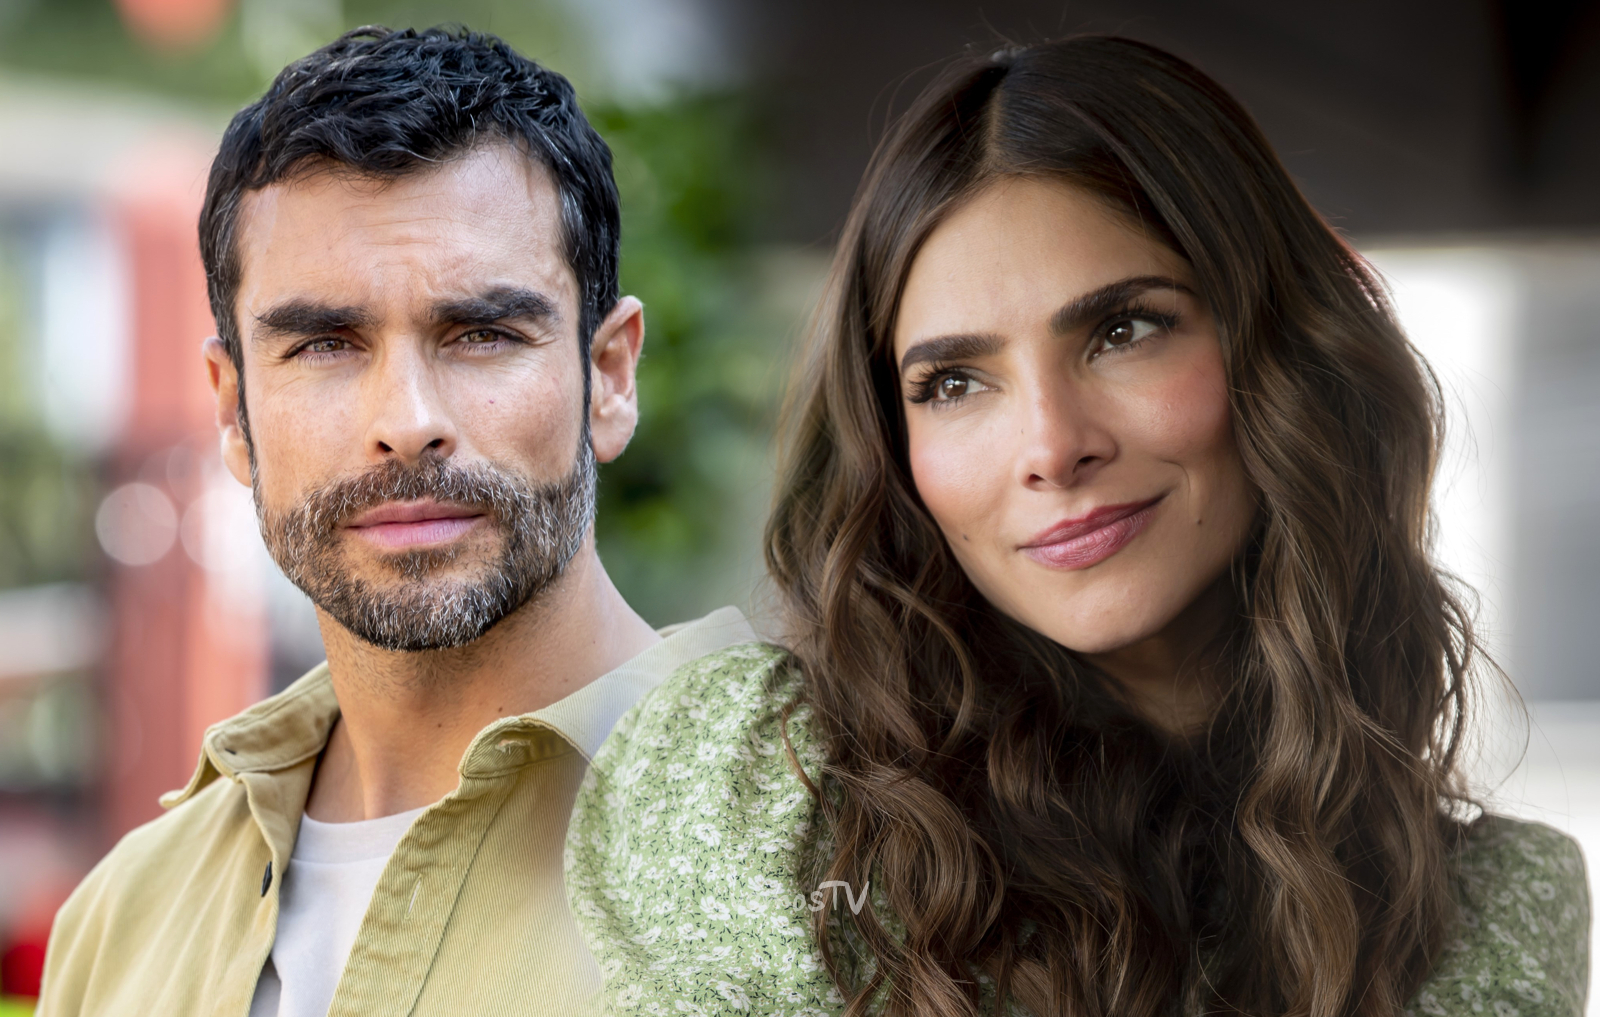 Gonzalo GarcíaVivanco y Alejandra Espinoza protagonizan Corazón Guerrero, estreno en Nova el lunes 20 de mayo